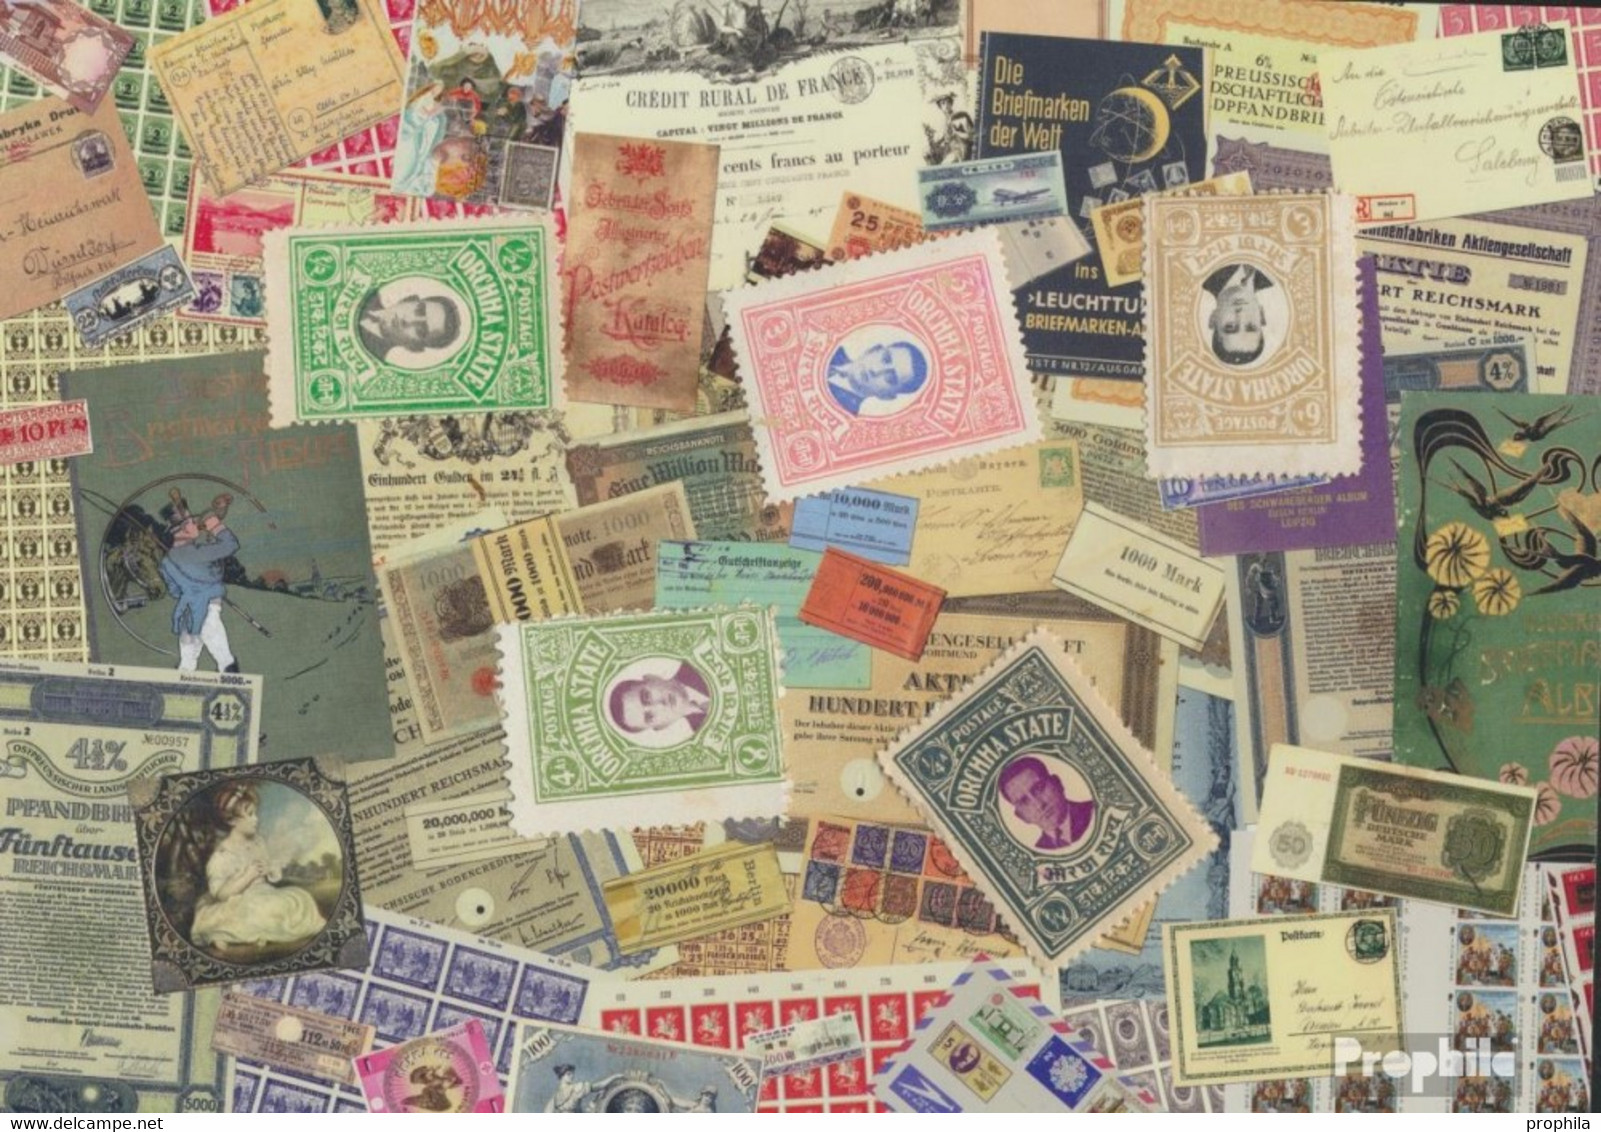 Orchha Briefmarken-5 Verschiedene Marken - Orchha